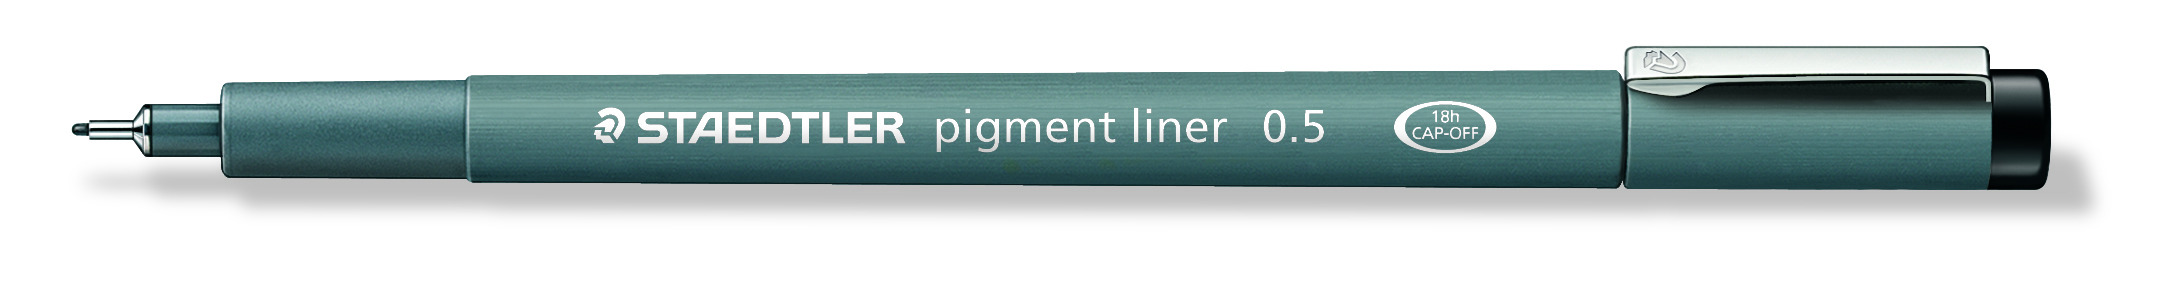 Fineliner pigment liner 0,5mm sort, Staedtler 308 05-9,10stk